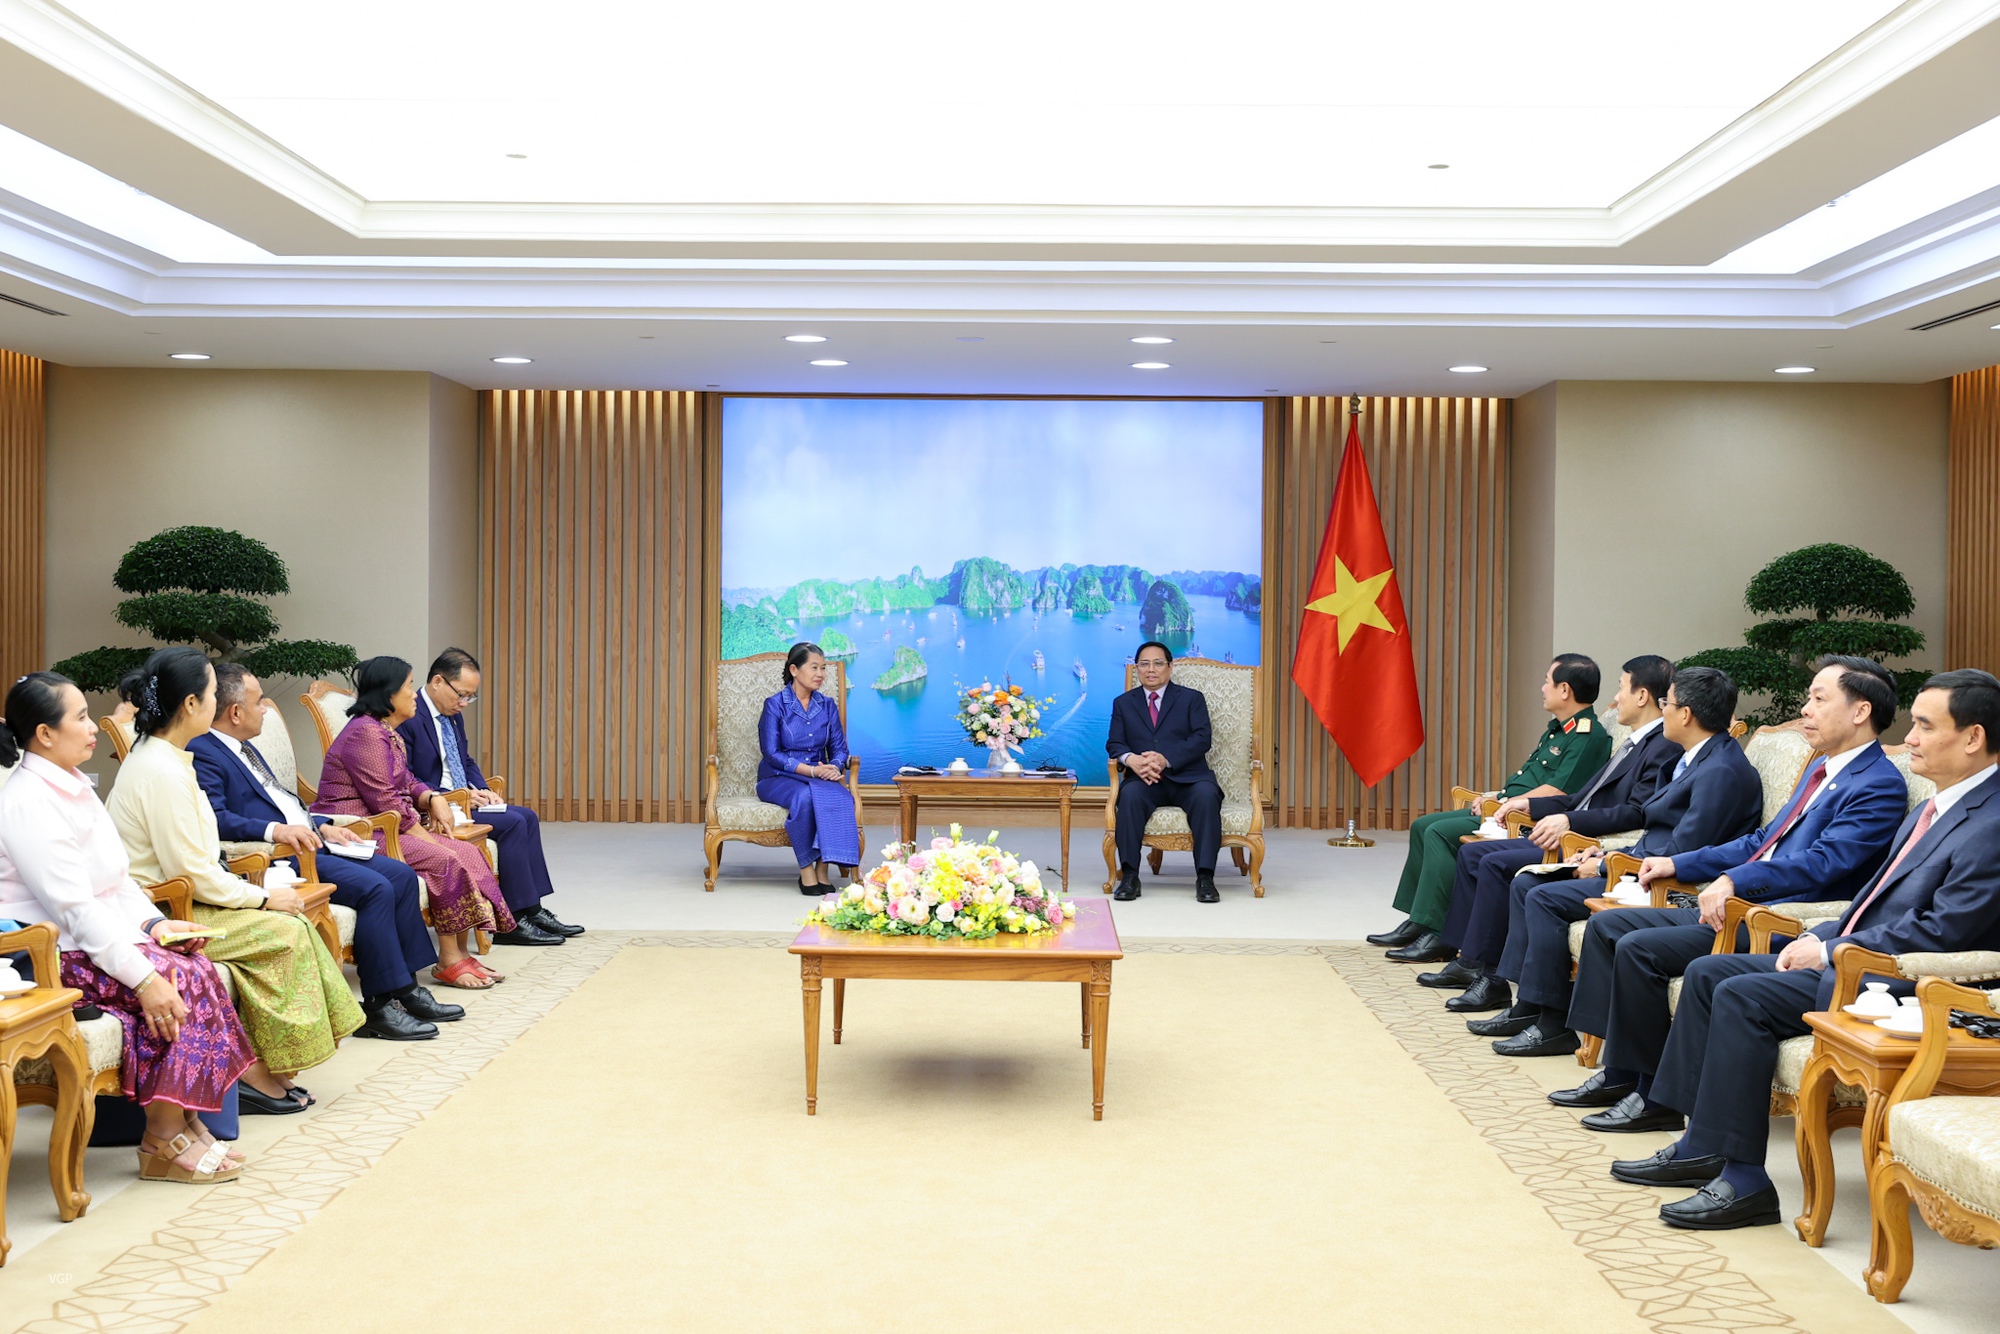 Phó Thủ tướng Men Sam An khẳng định sẽ tiếp tục nỗ lực góp phần vun đắp cho tình hữu nghị giữa hai dân tộc.